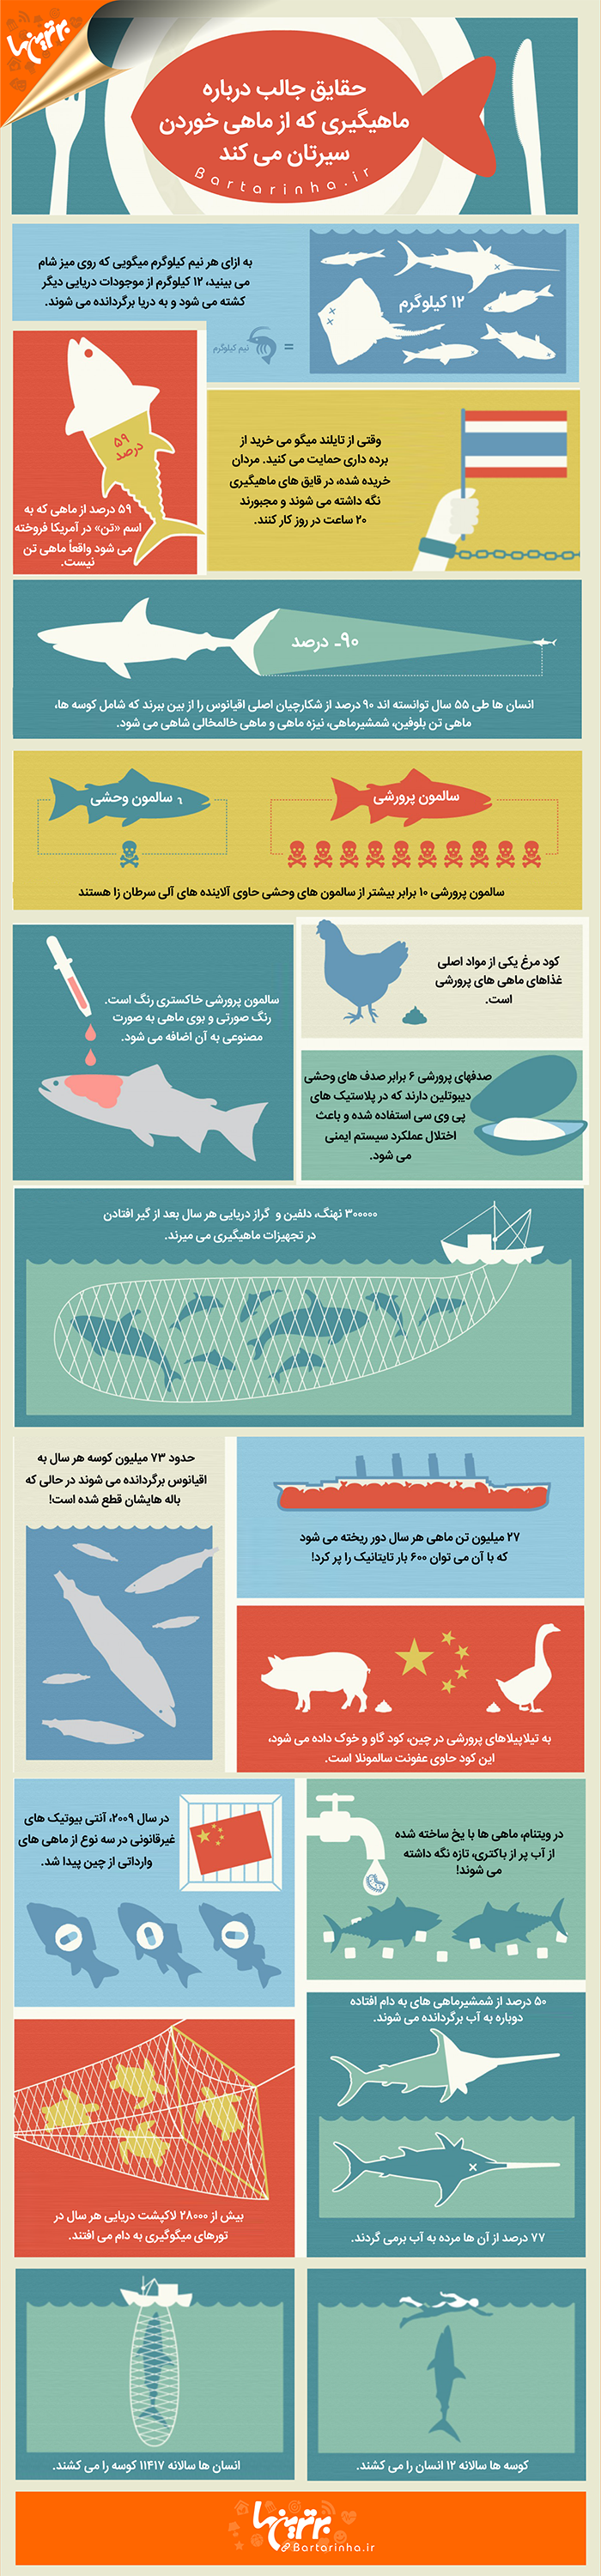 اینفوگرافی: حقایق جالب درباره ماهیگیری